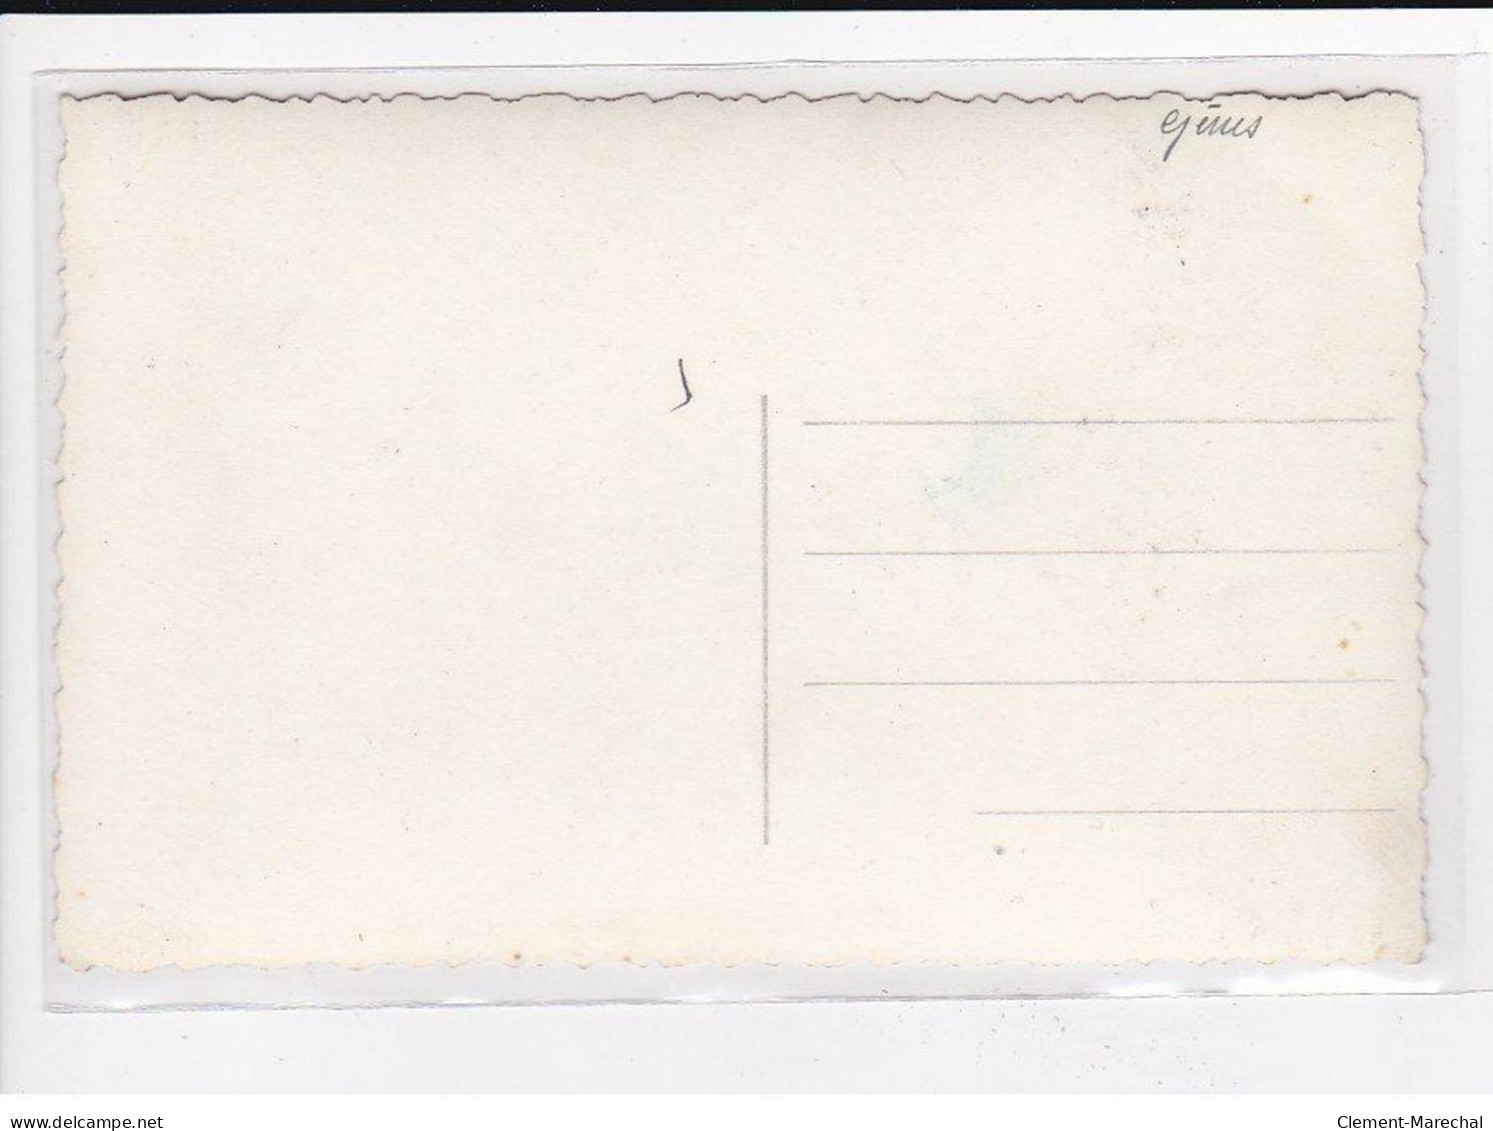 SAUMUR : Ruines de la seconde Guerres Mondiale, Lot de 8 Cartes Postales - très bon état